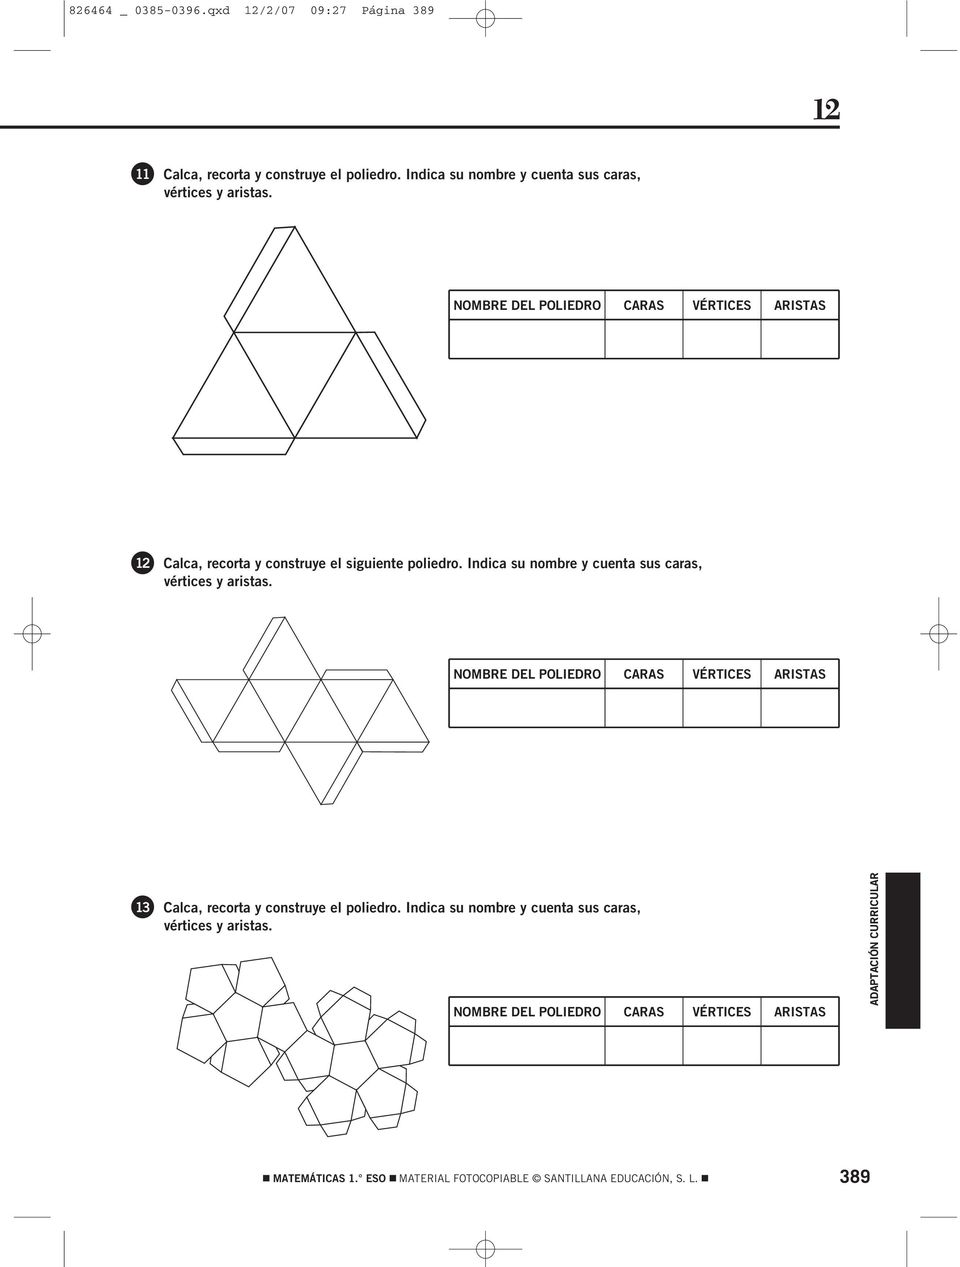 NOMBRE DEL POLIEDRO CARAS VÉRTICES ARISTAS Calca, recorta y construye el siguiente poliedro.